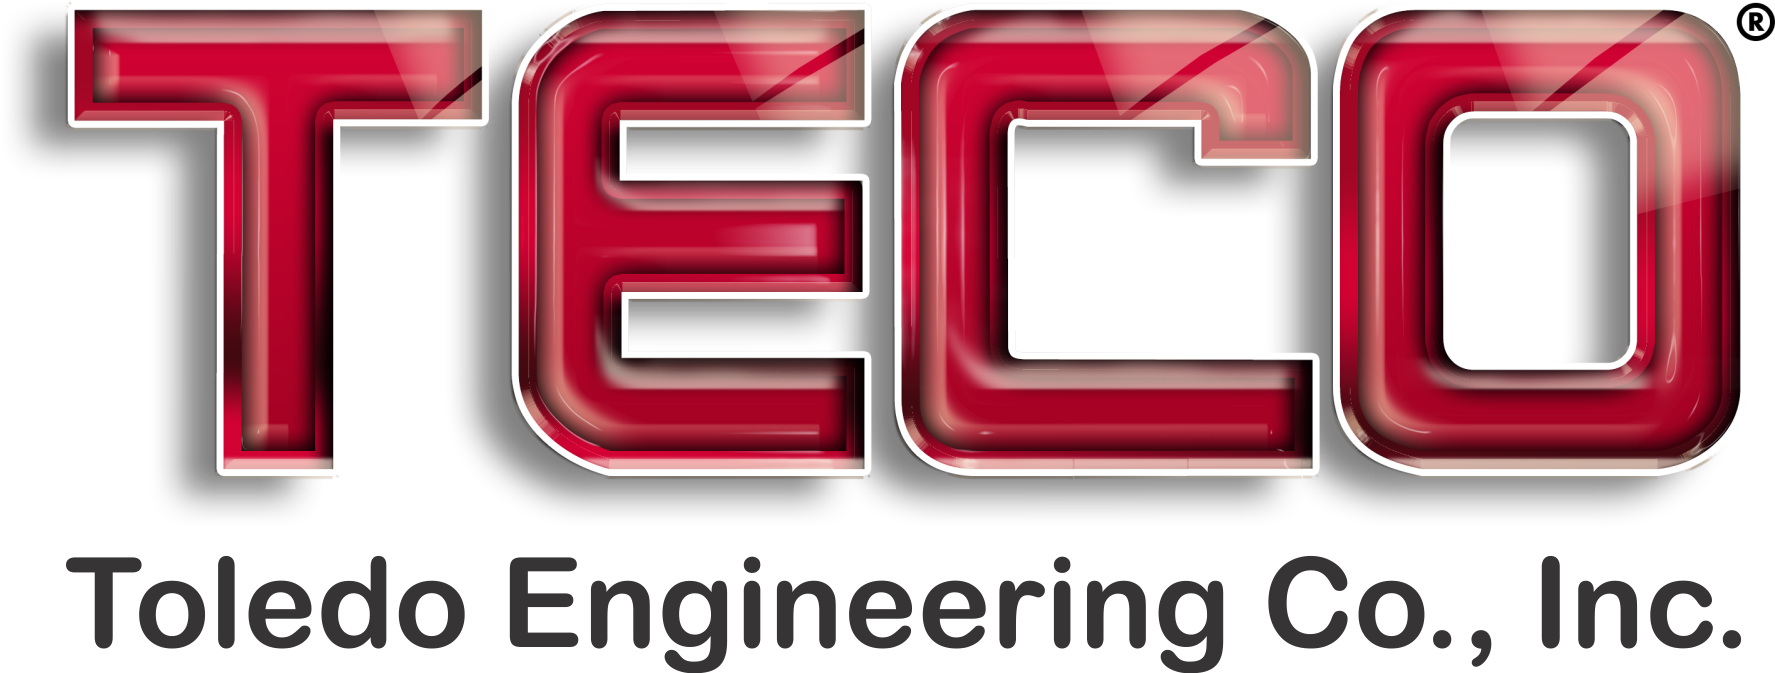 Toledo Engineering Co., Inc.